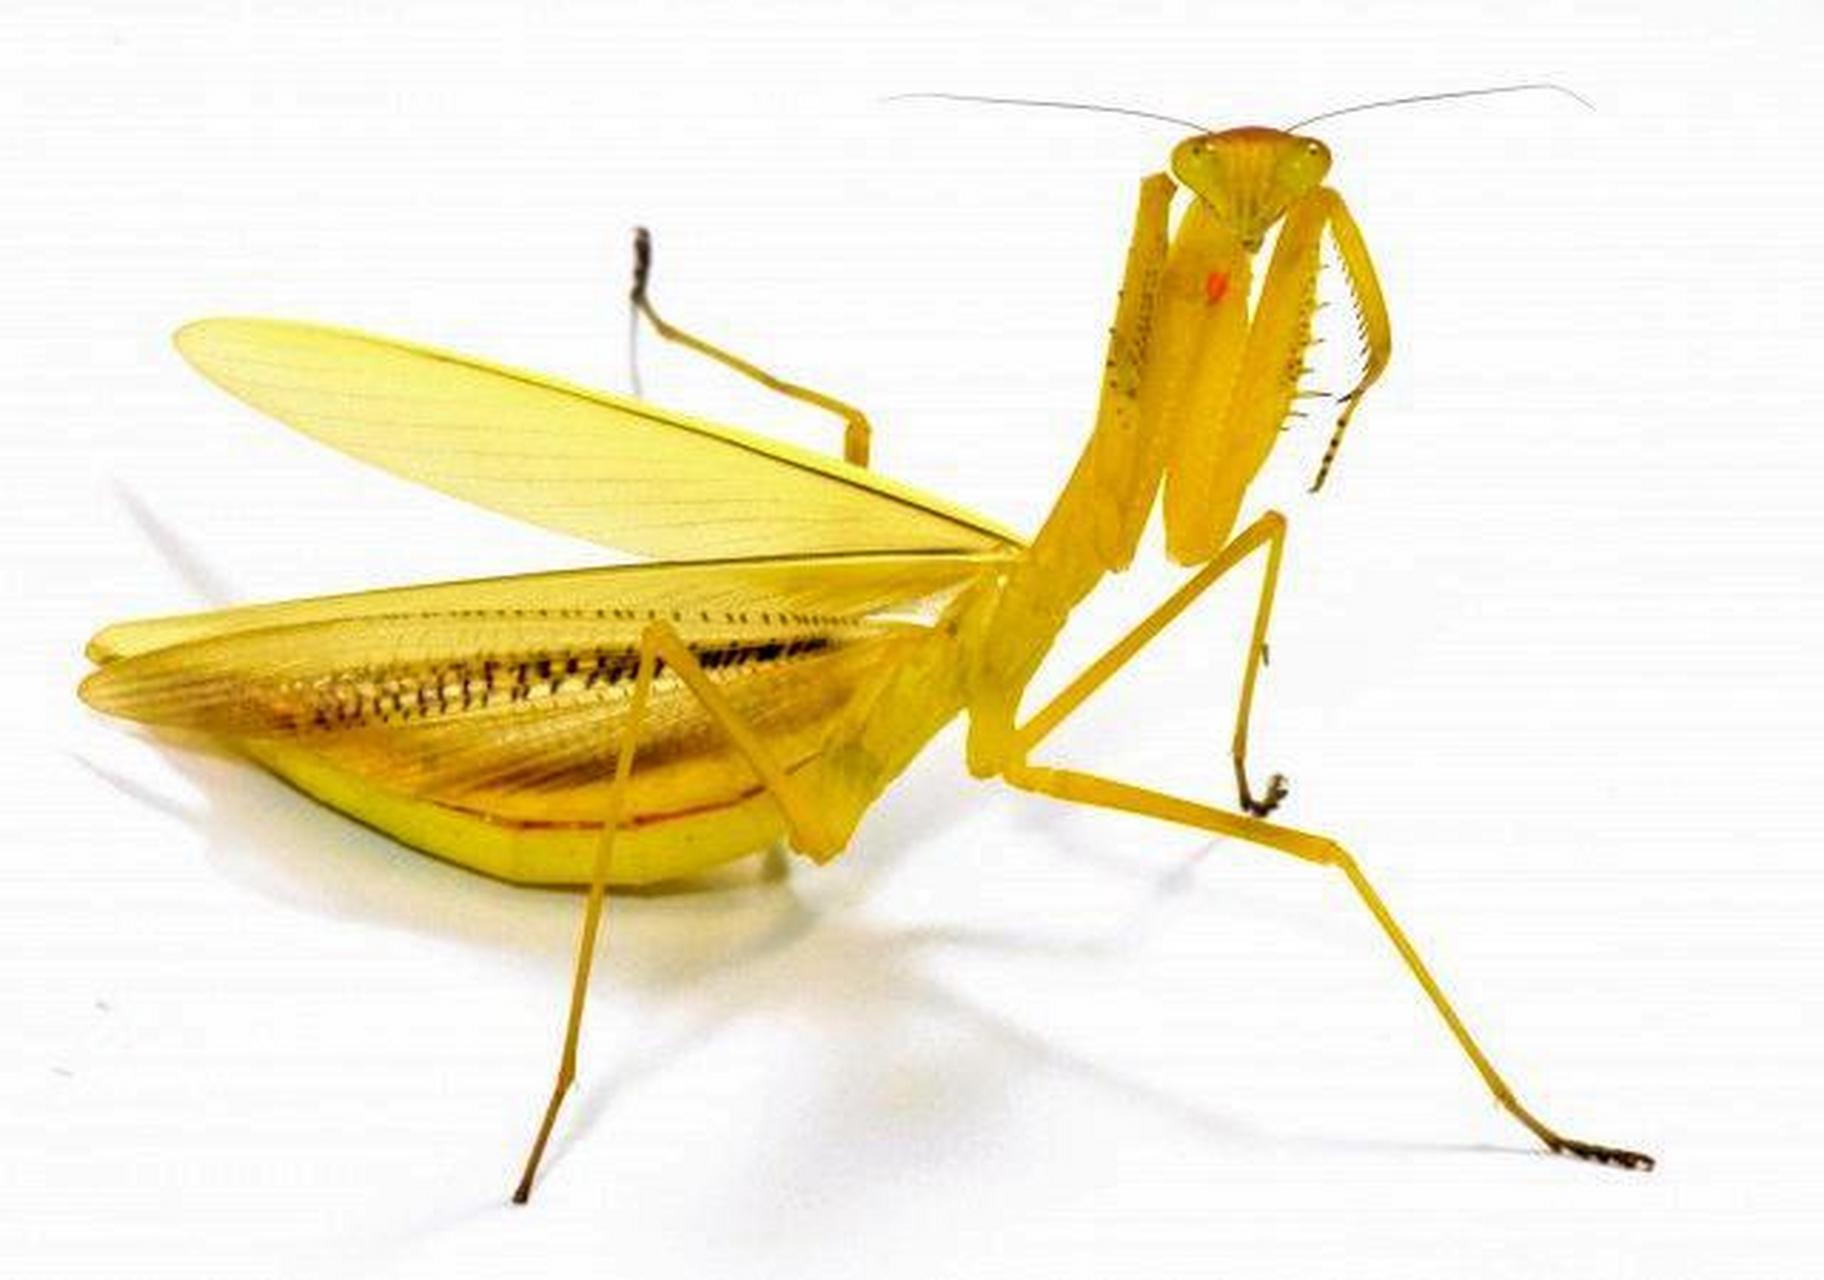 5厘米,雌性较大,体长约7厘米,而且黄花螳螂的体表为黄色,头